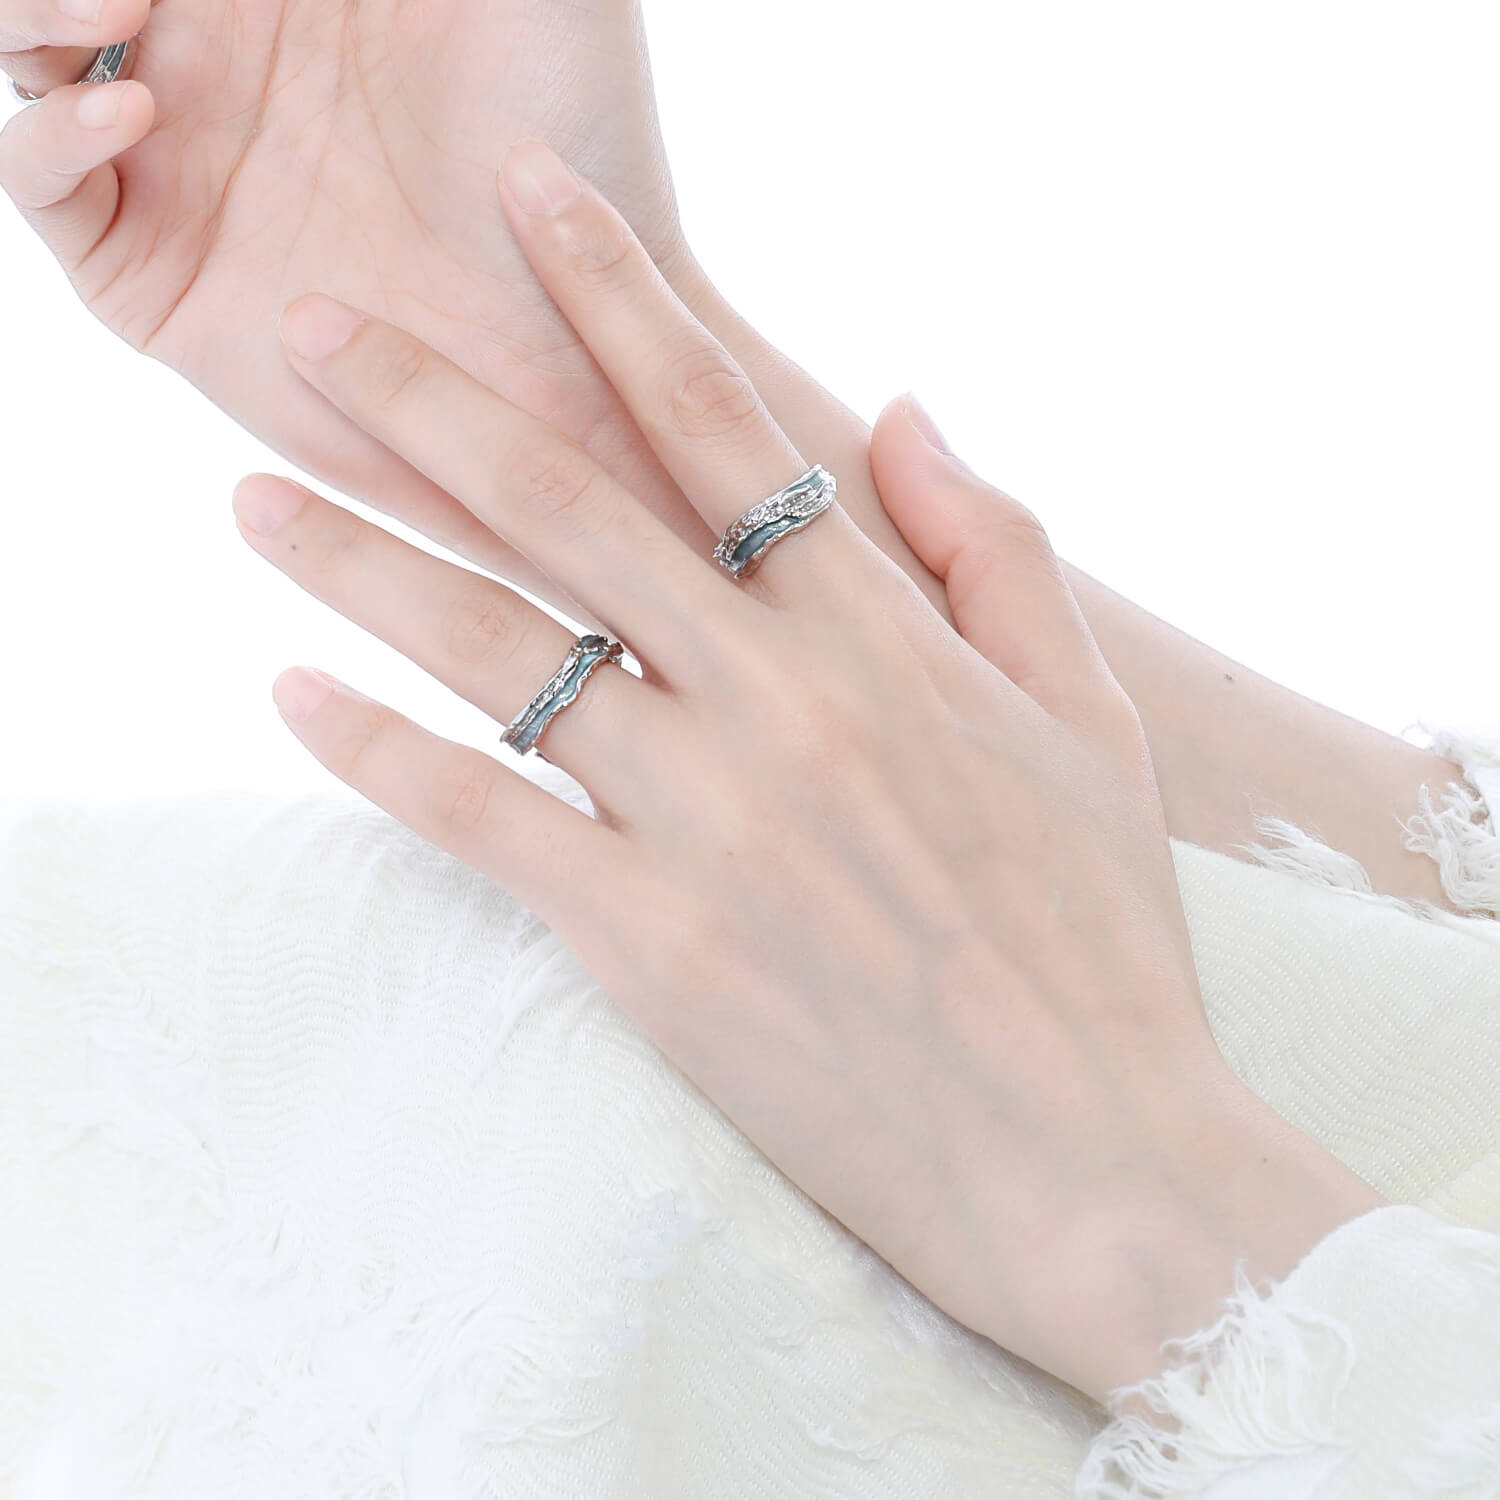 ASOS Braid Thumb Ring | ASOS | Fashion rings, Thumb rings, Gold thumb rings